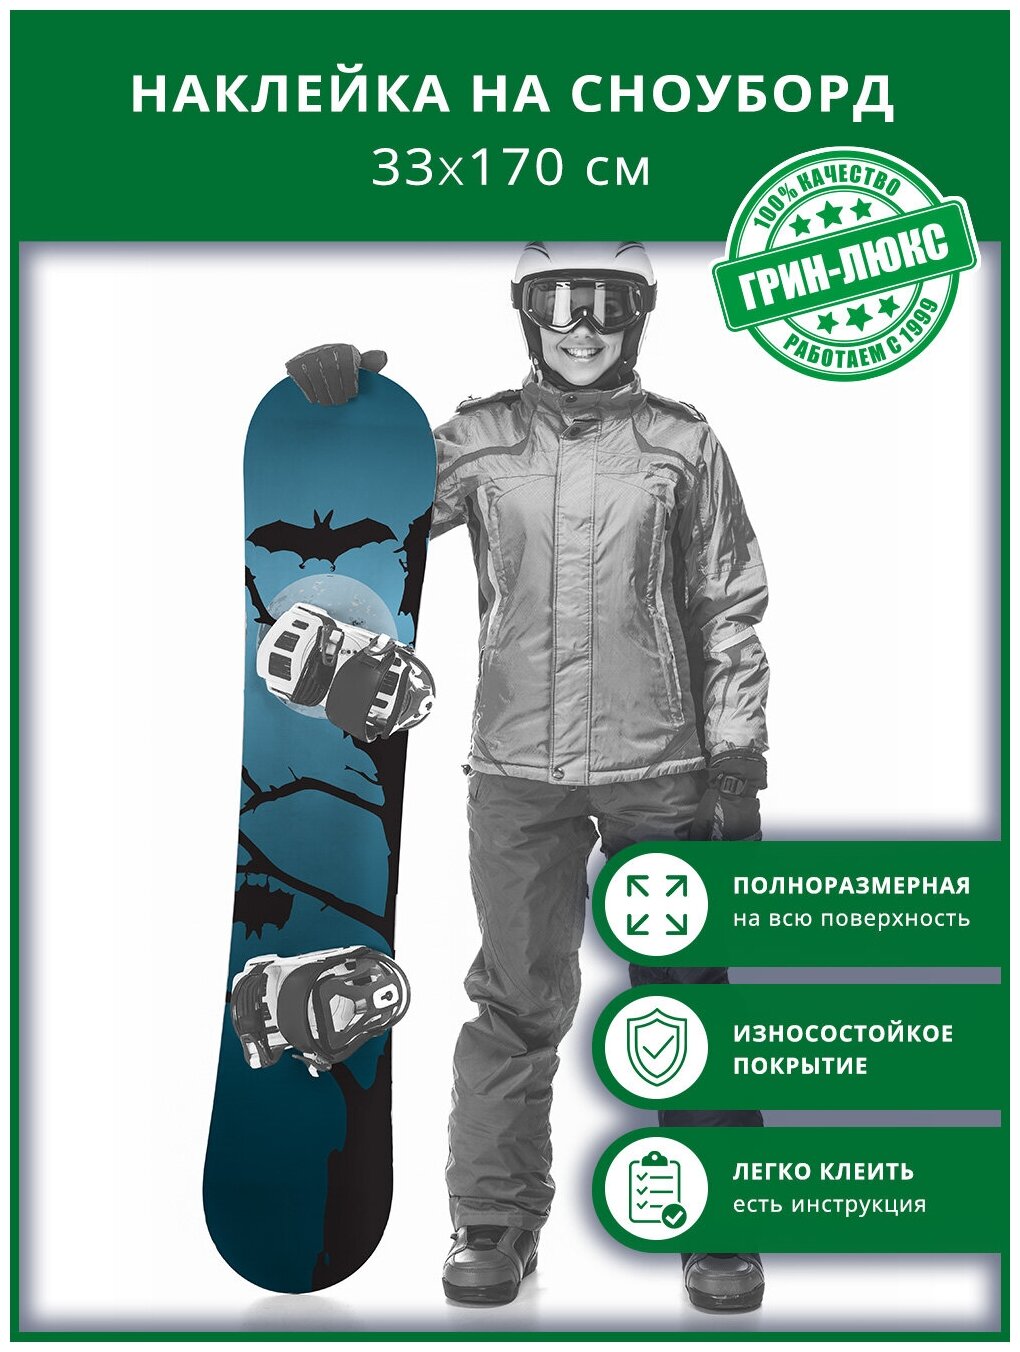 Наклейка на сноуборд с защитным глянцевым покрытием 33х170 см "Сумрачная ночь"